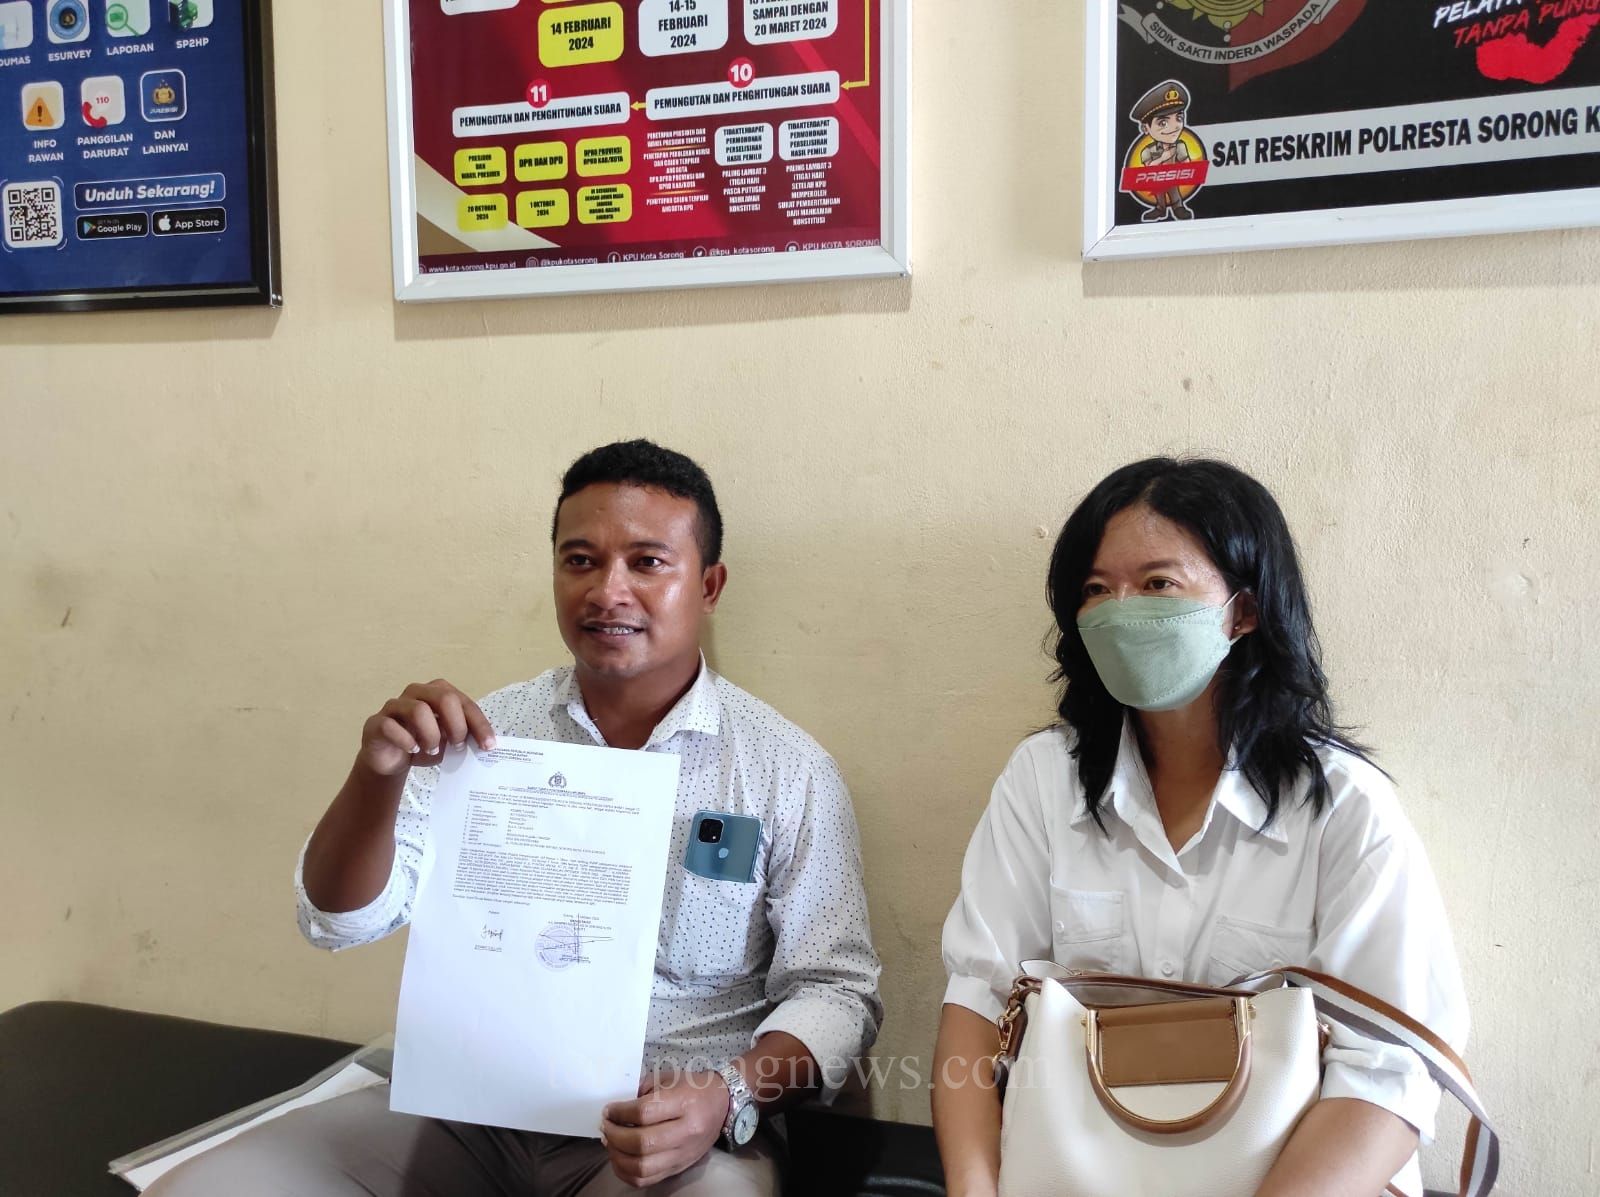 Diancam Keluarga Sendiri, IRT di Sorong Lapor ke Polisi